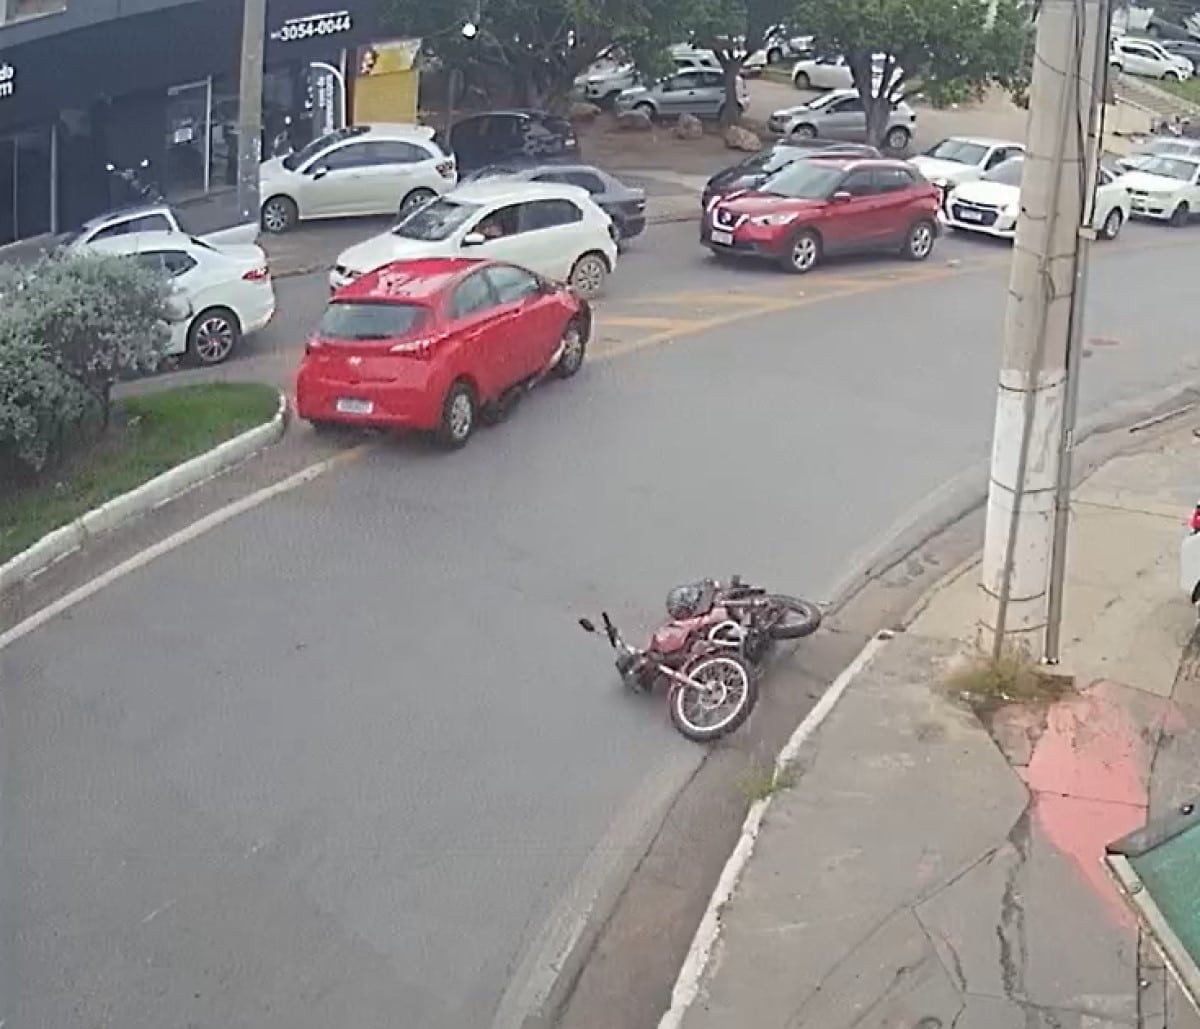 Vídeo mostra motociclista sendo arrastado debaixo de carro em Cuiabá.